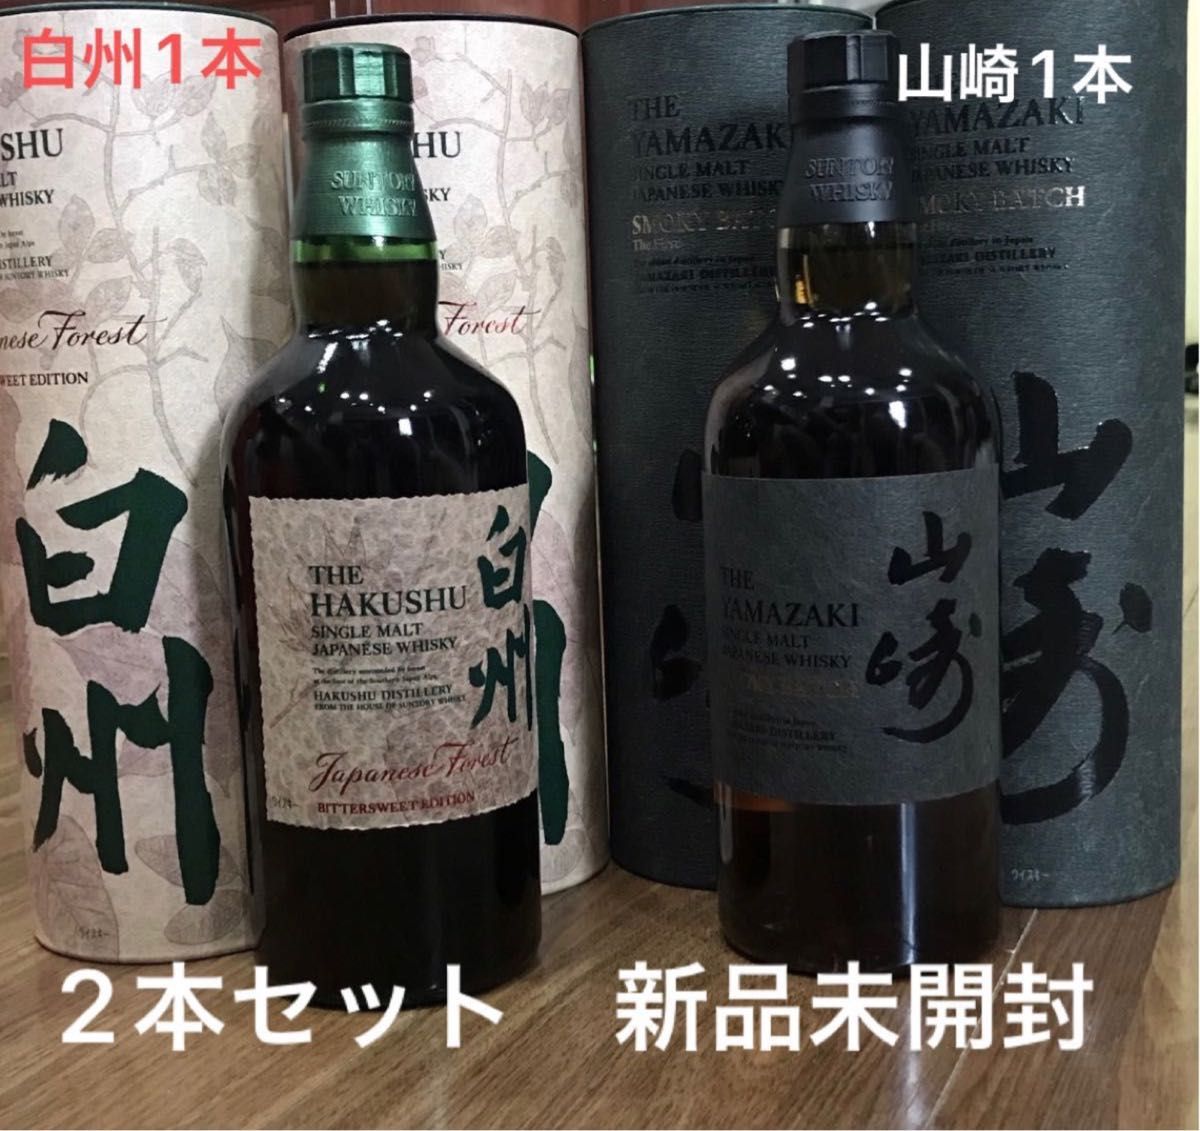 山崎 SMOKY BATCH と白州Japanese Forest 国産ウイスキー2本セット